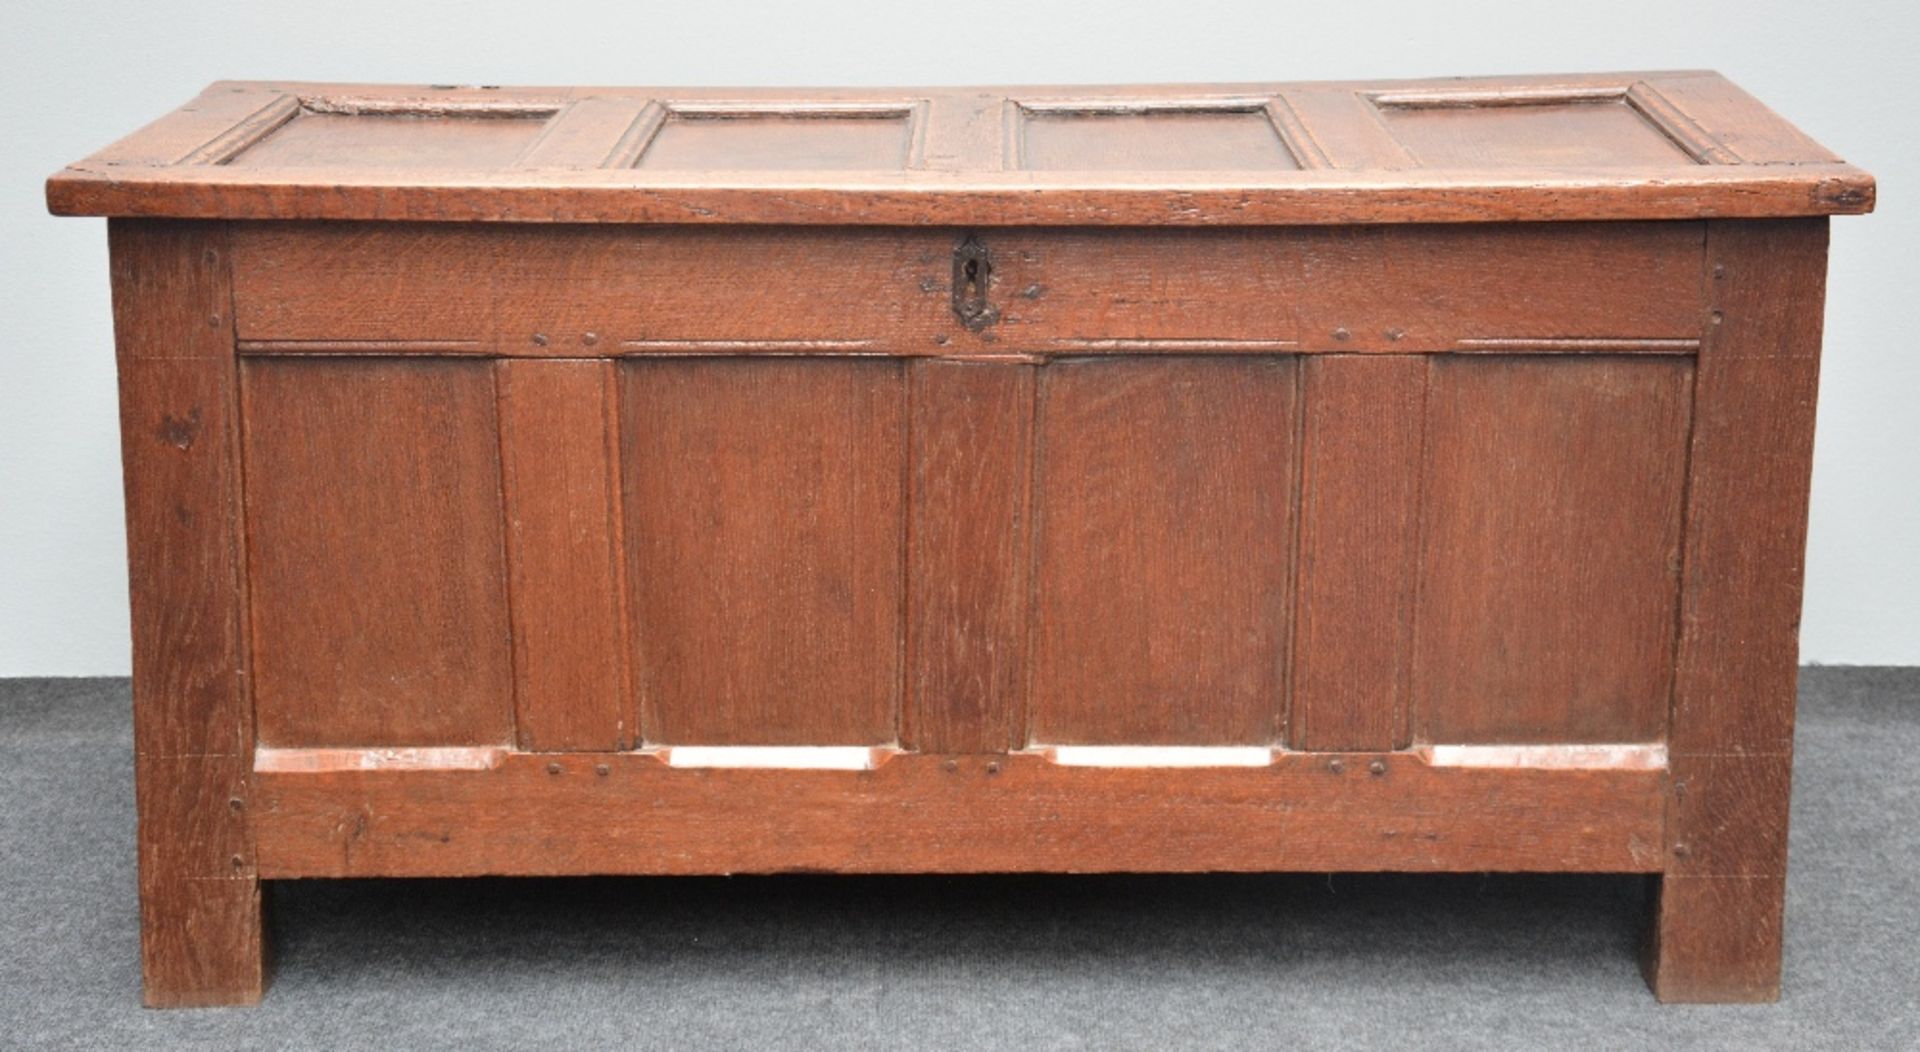 An 18thC oak chest, H 61 - W 125,5 - D 55 cm